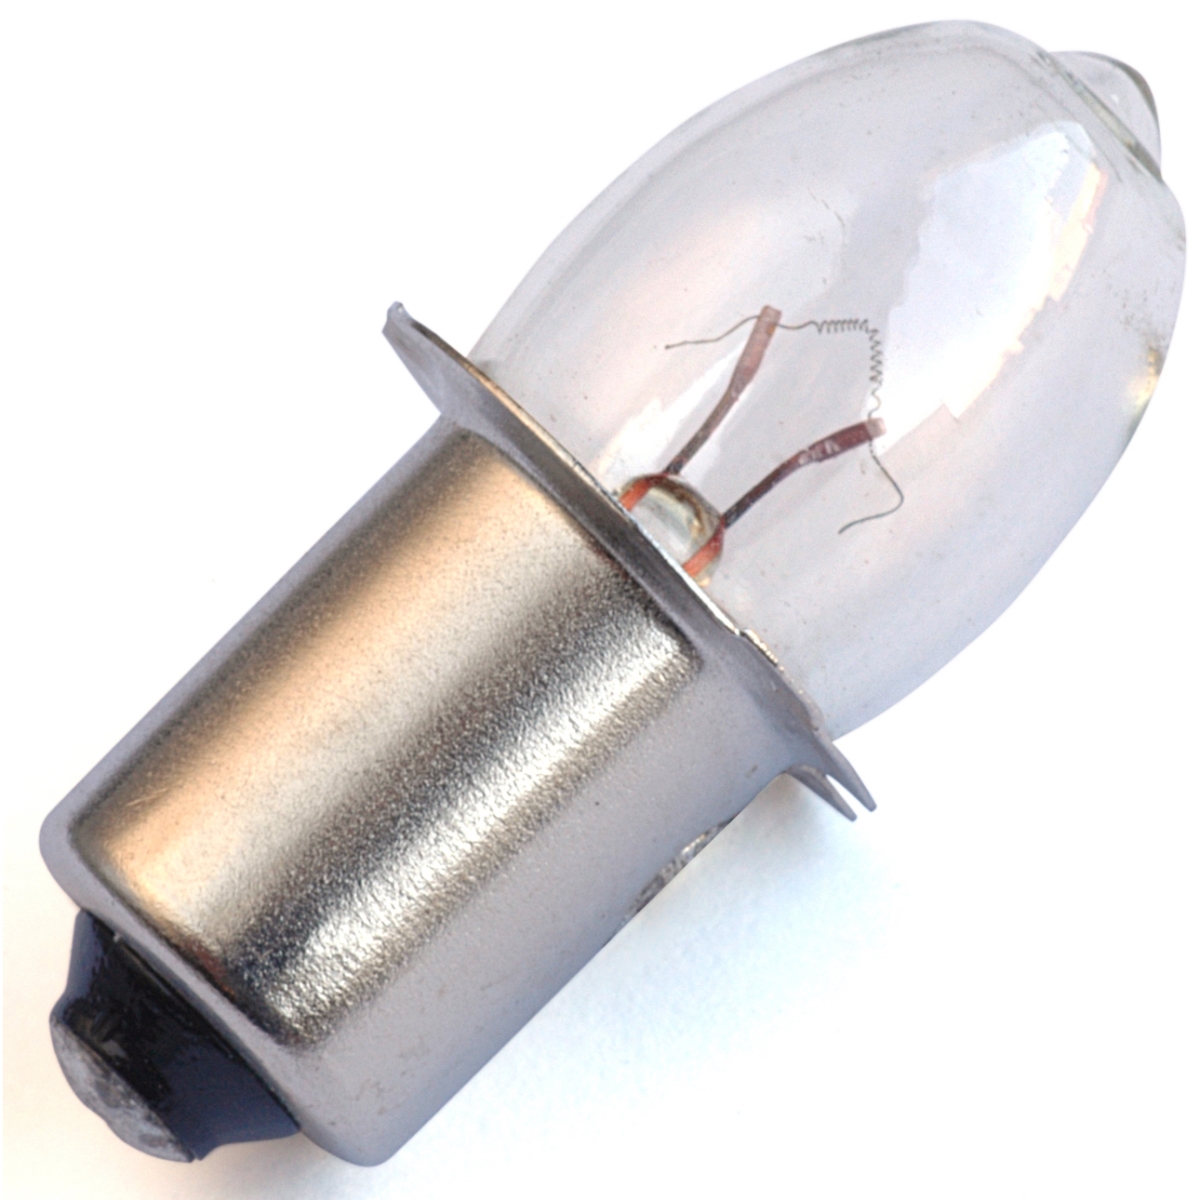 Mb-pr07 3.7 V 3-d Cell Long Life Light Bulb, Clear